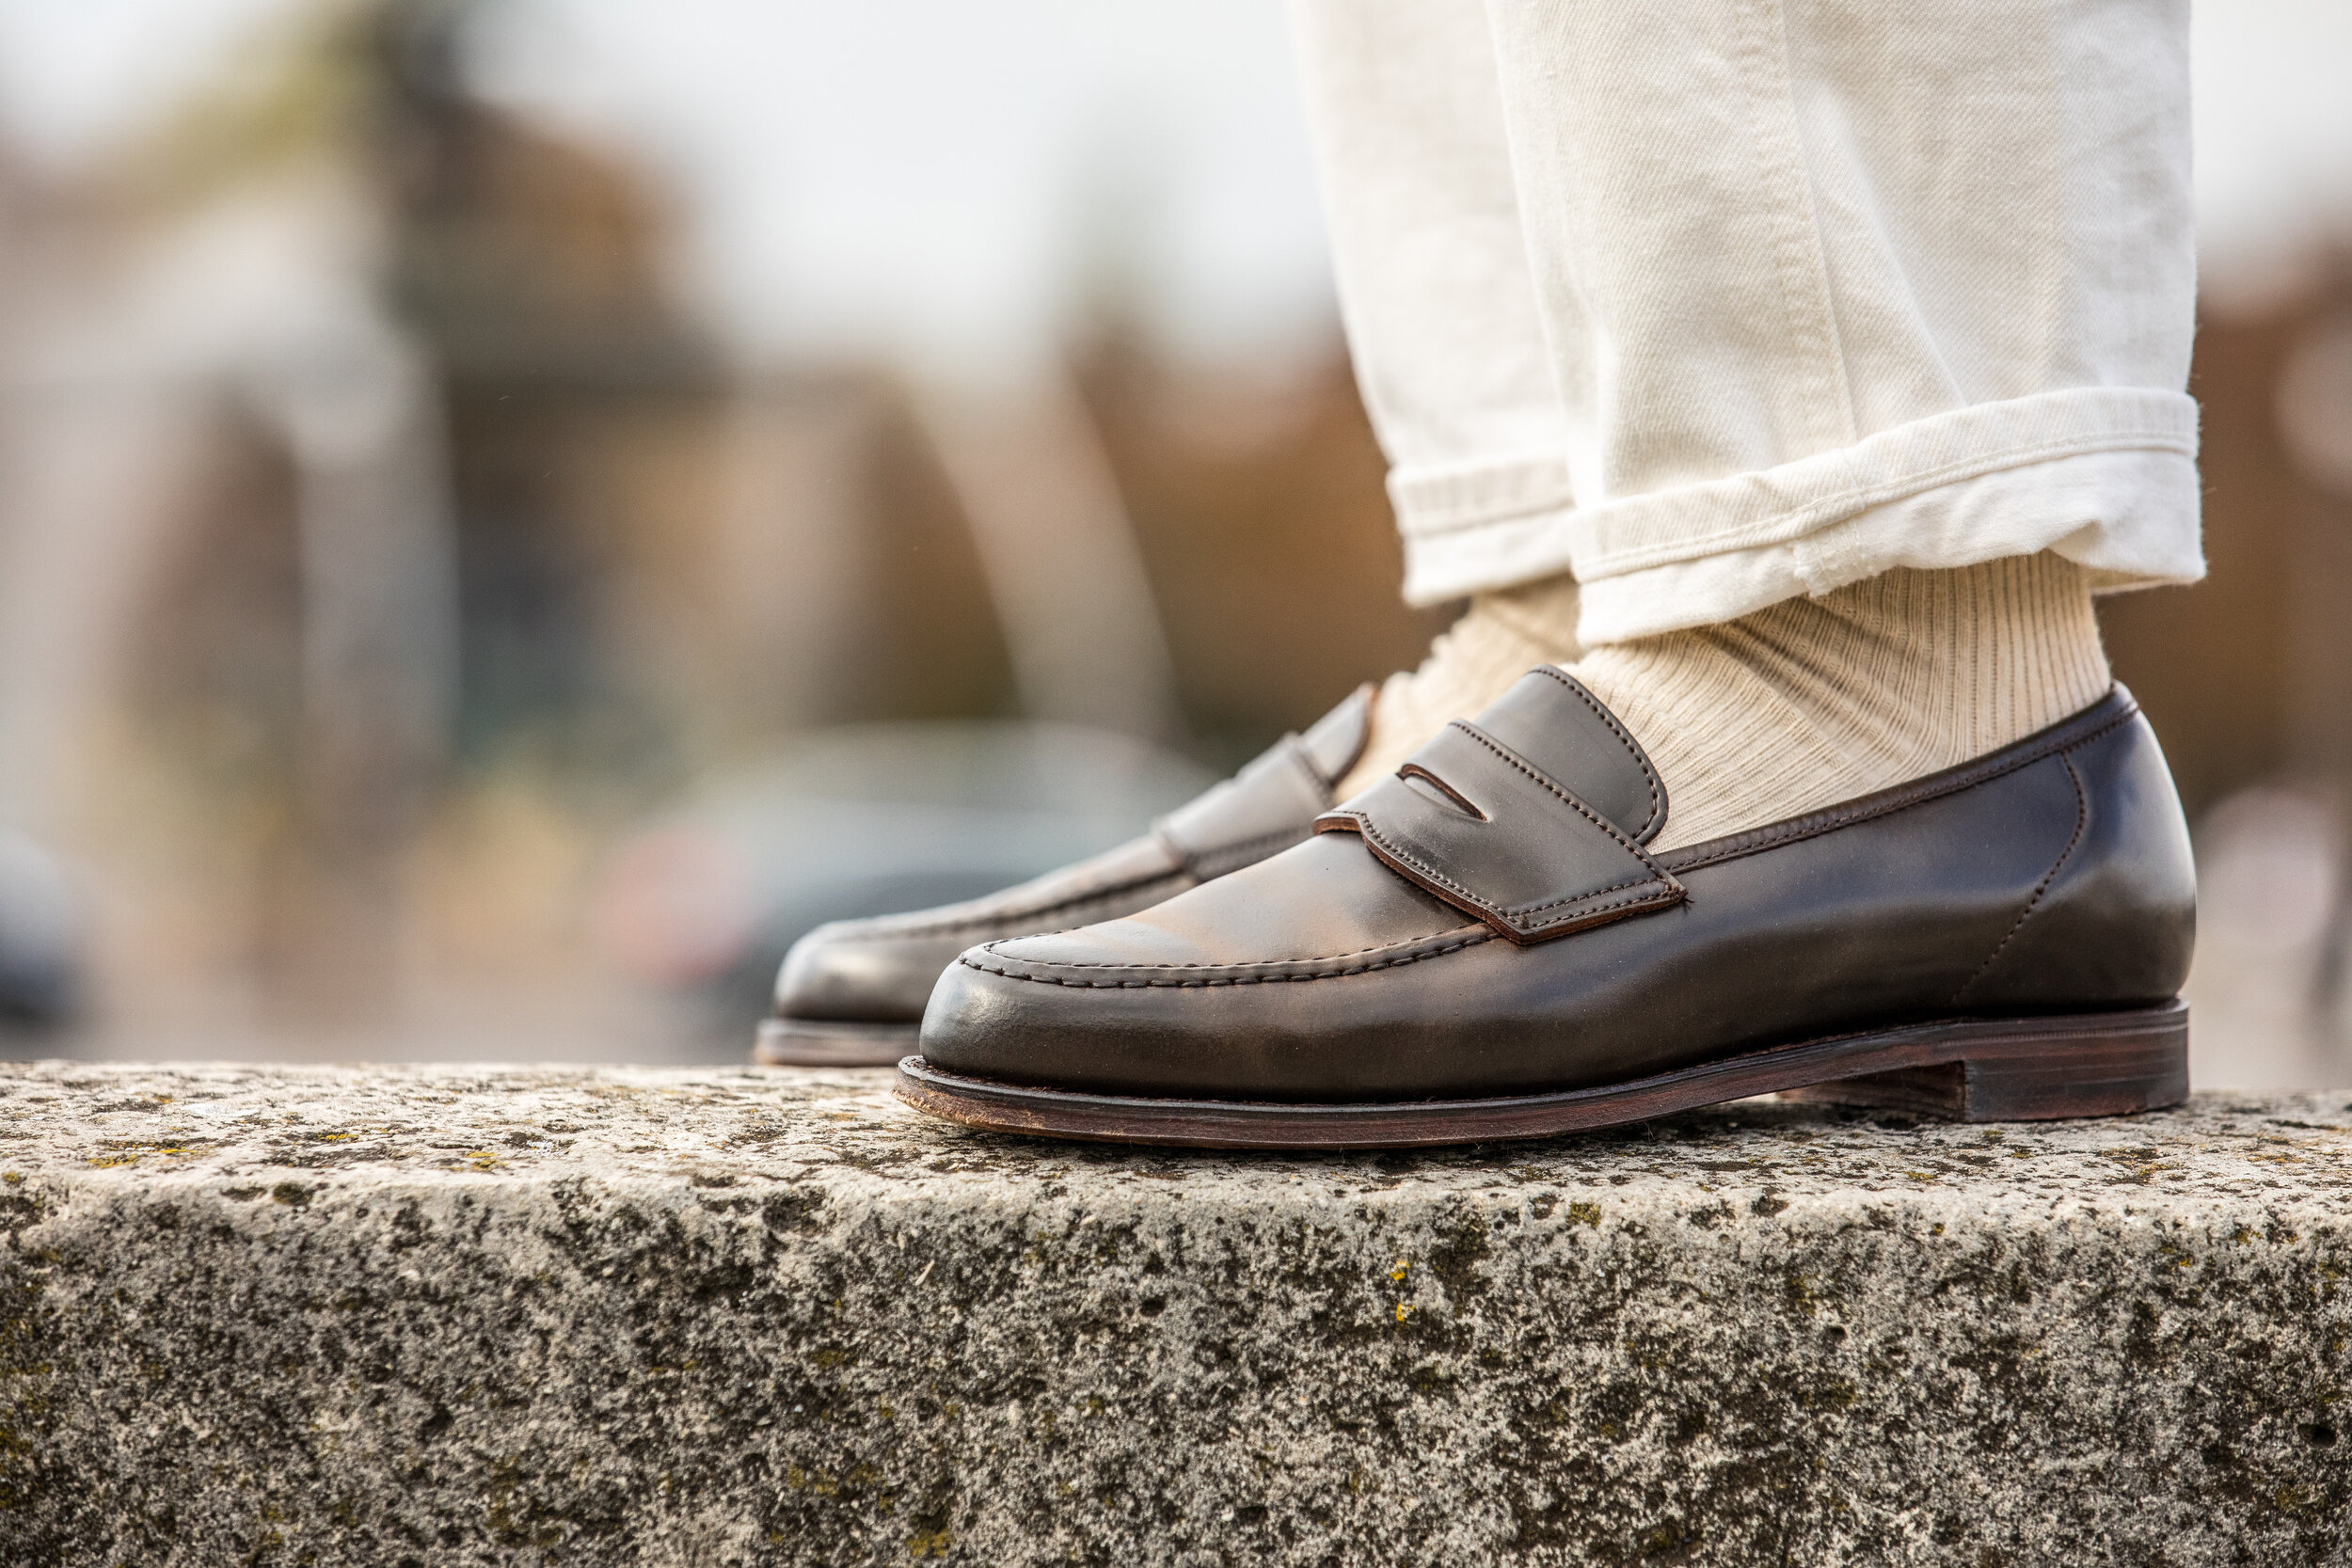 Crockett  Jones - Harvard cordovan penny loafers — Les Indispensables